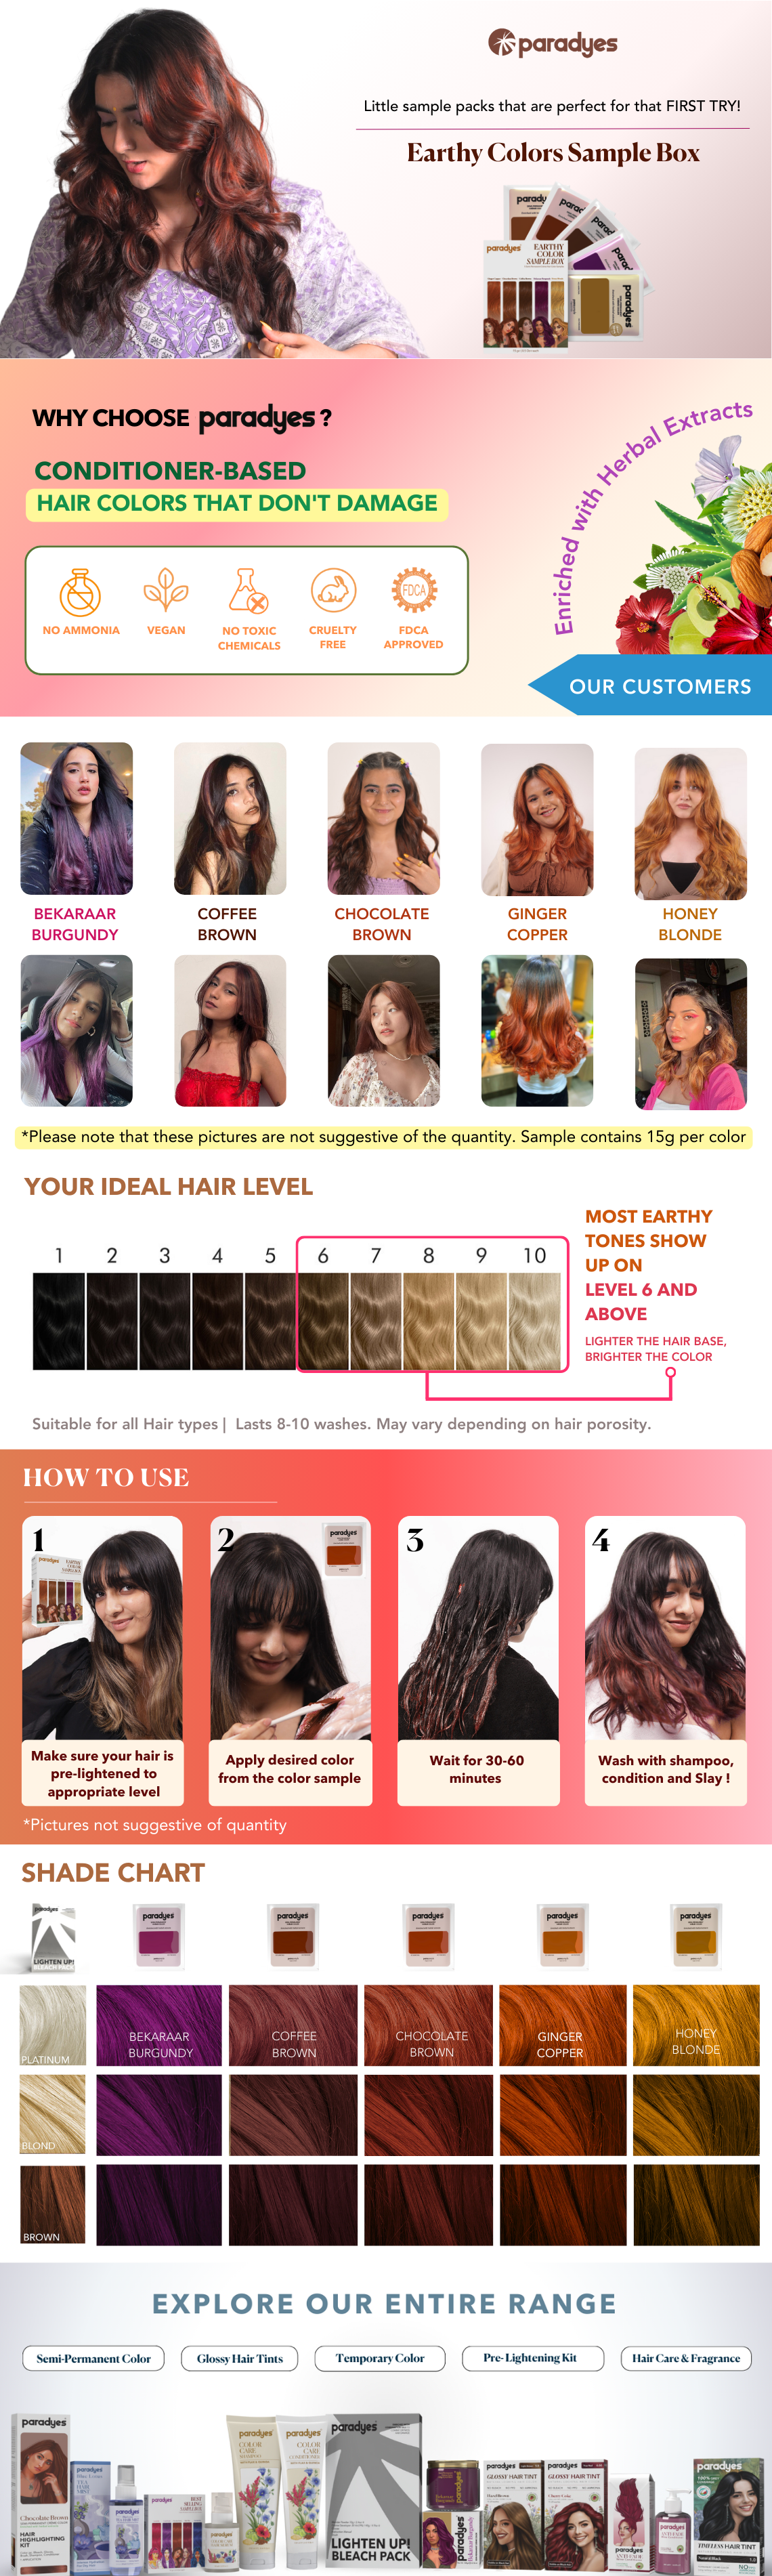 Earthy Hair Color Sample Box